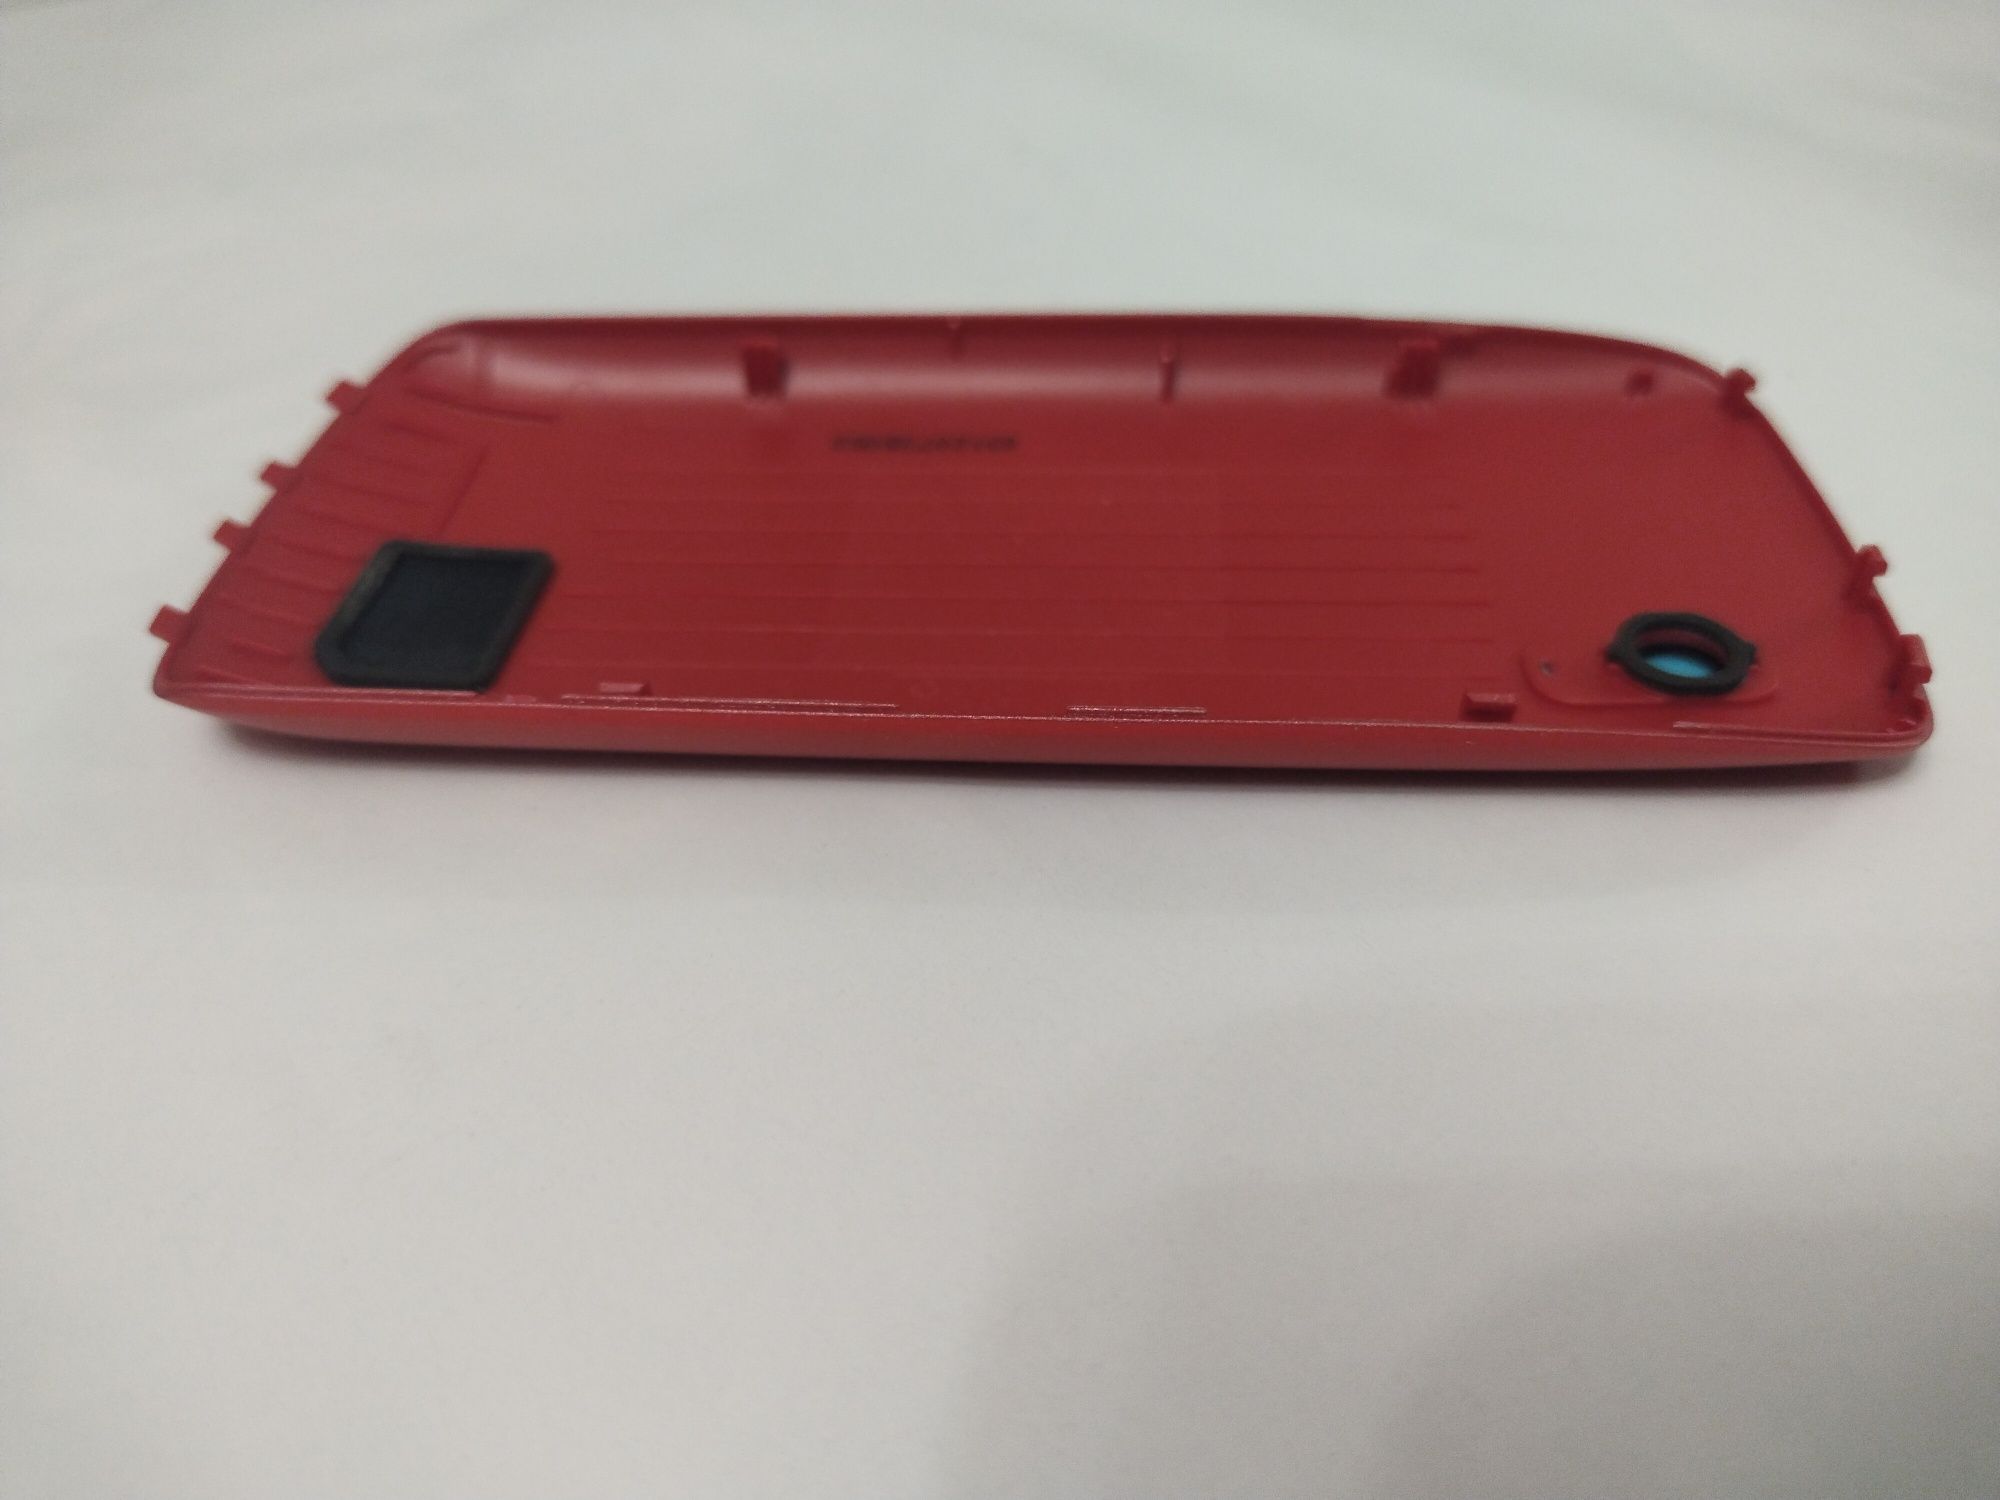 Крышка на заднюю часть корпуса телефона Nokia 300, на аккумулятор